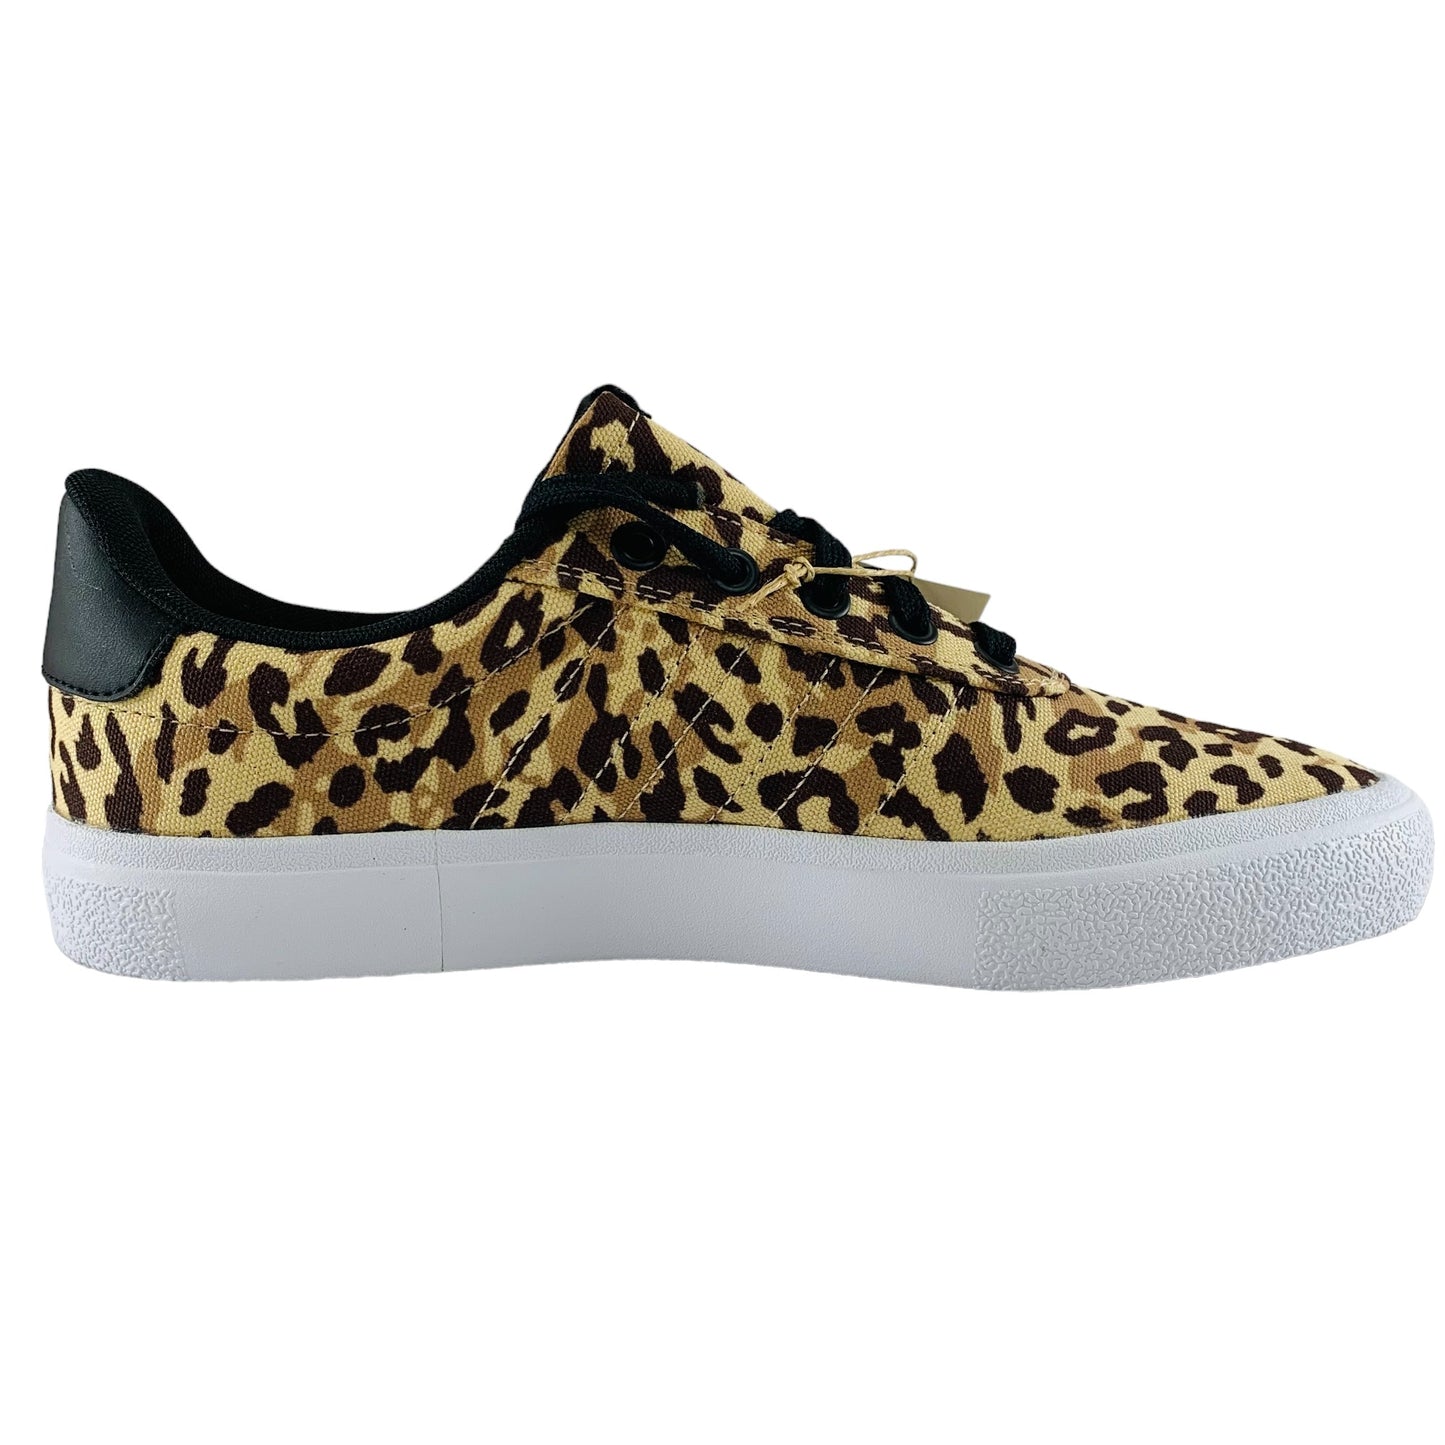 Adidas FARM Rio x Vulc Raid3r Leopard Print